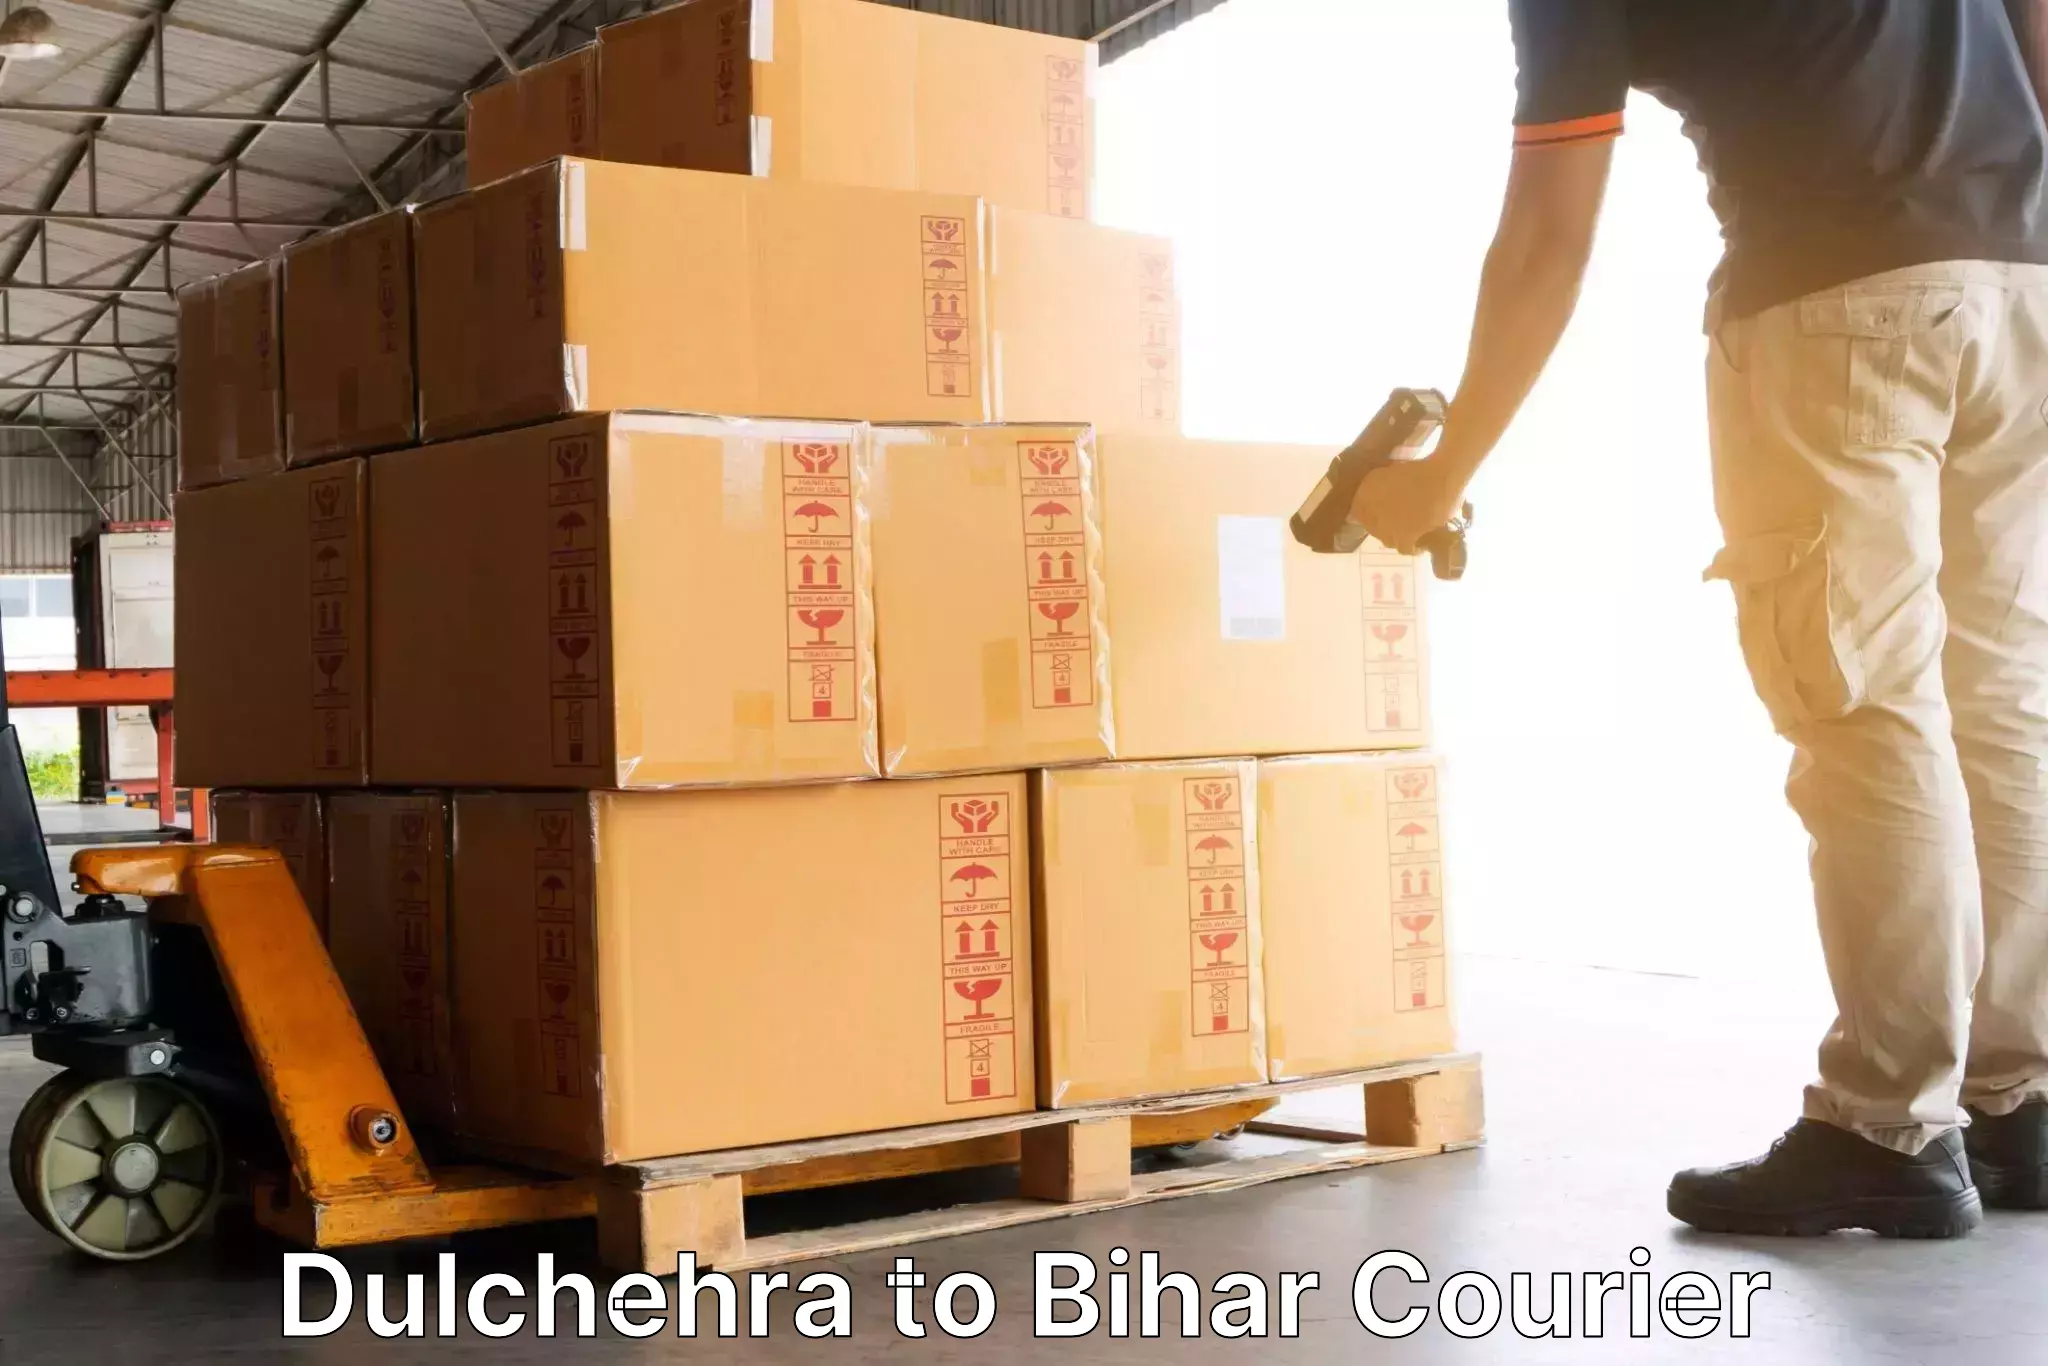 24-hour courier service Dulchehra to Gopalganj